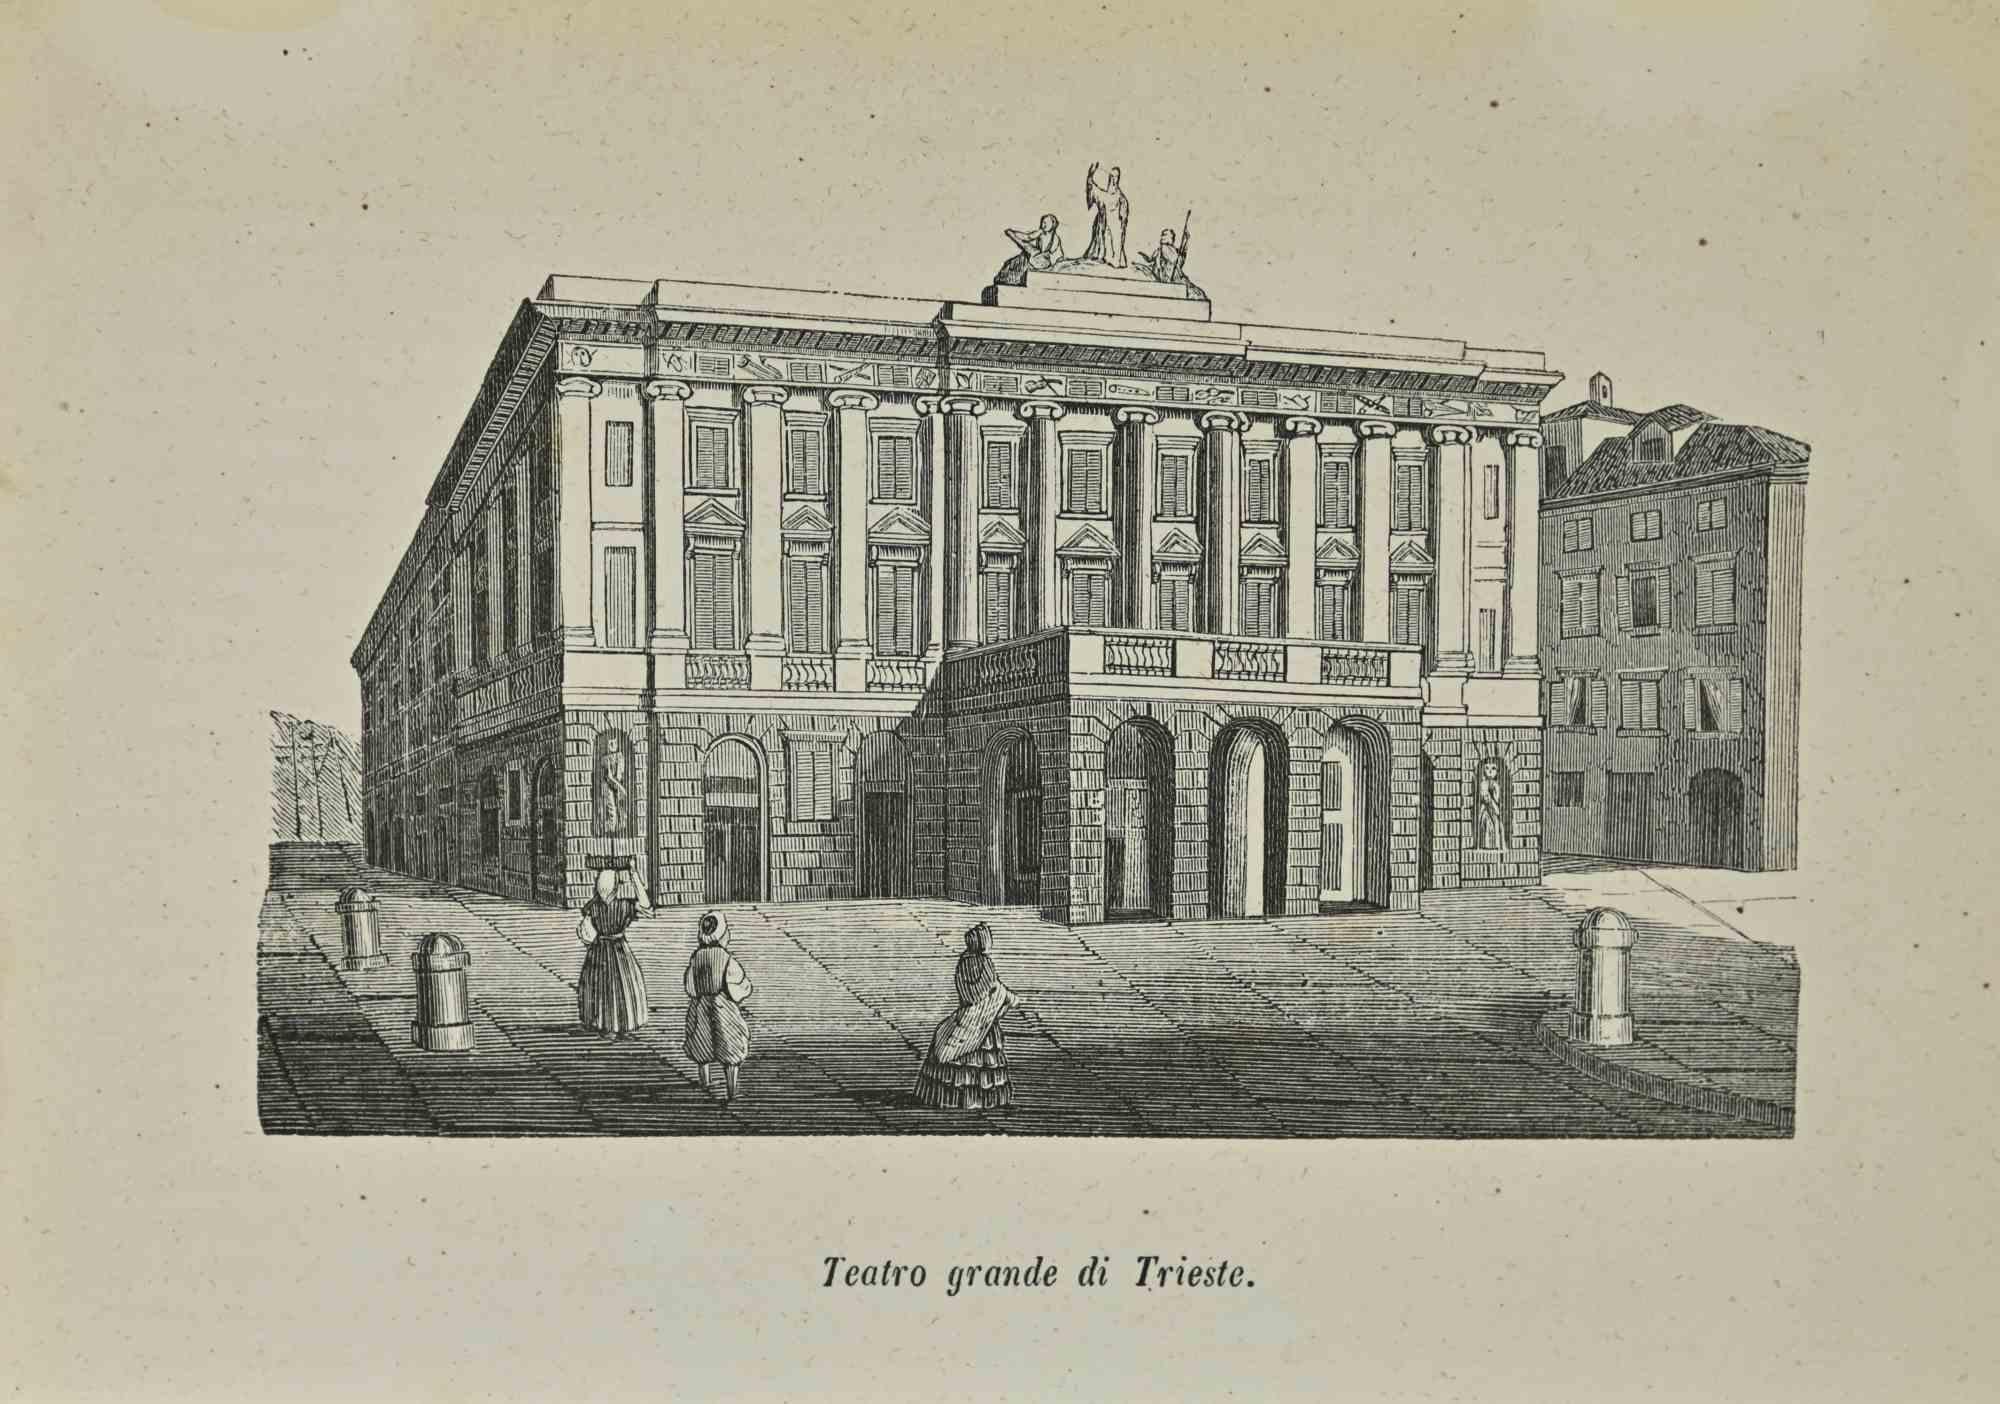 Unknown Landscape Print - Grand Theatre of Trieste - Lithograph - 1862